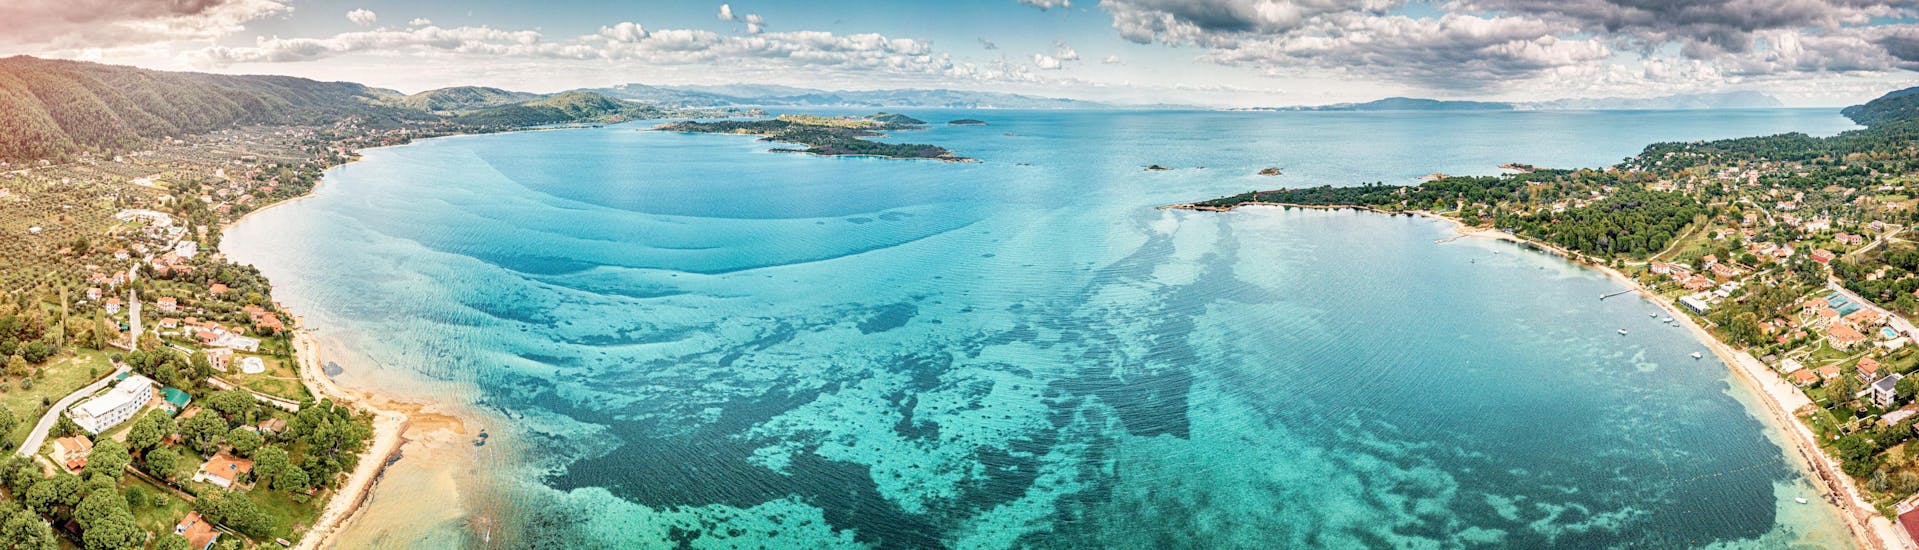 Vue panoramique aérienne d'un lagon bleu azur et d'une baie paradisiaque avec des motifs majestueux sur un plateau maritime.